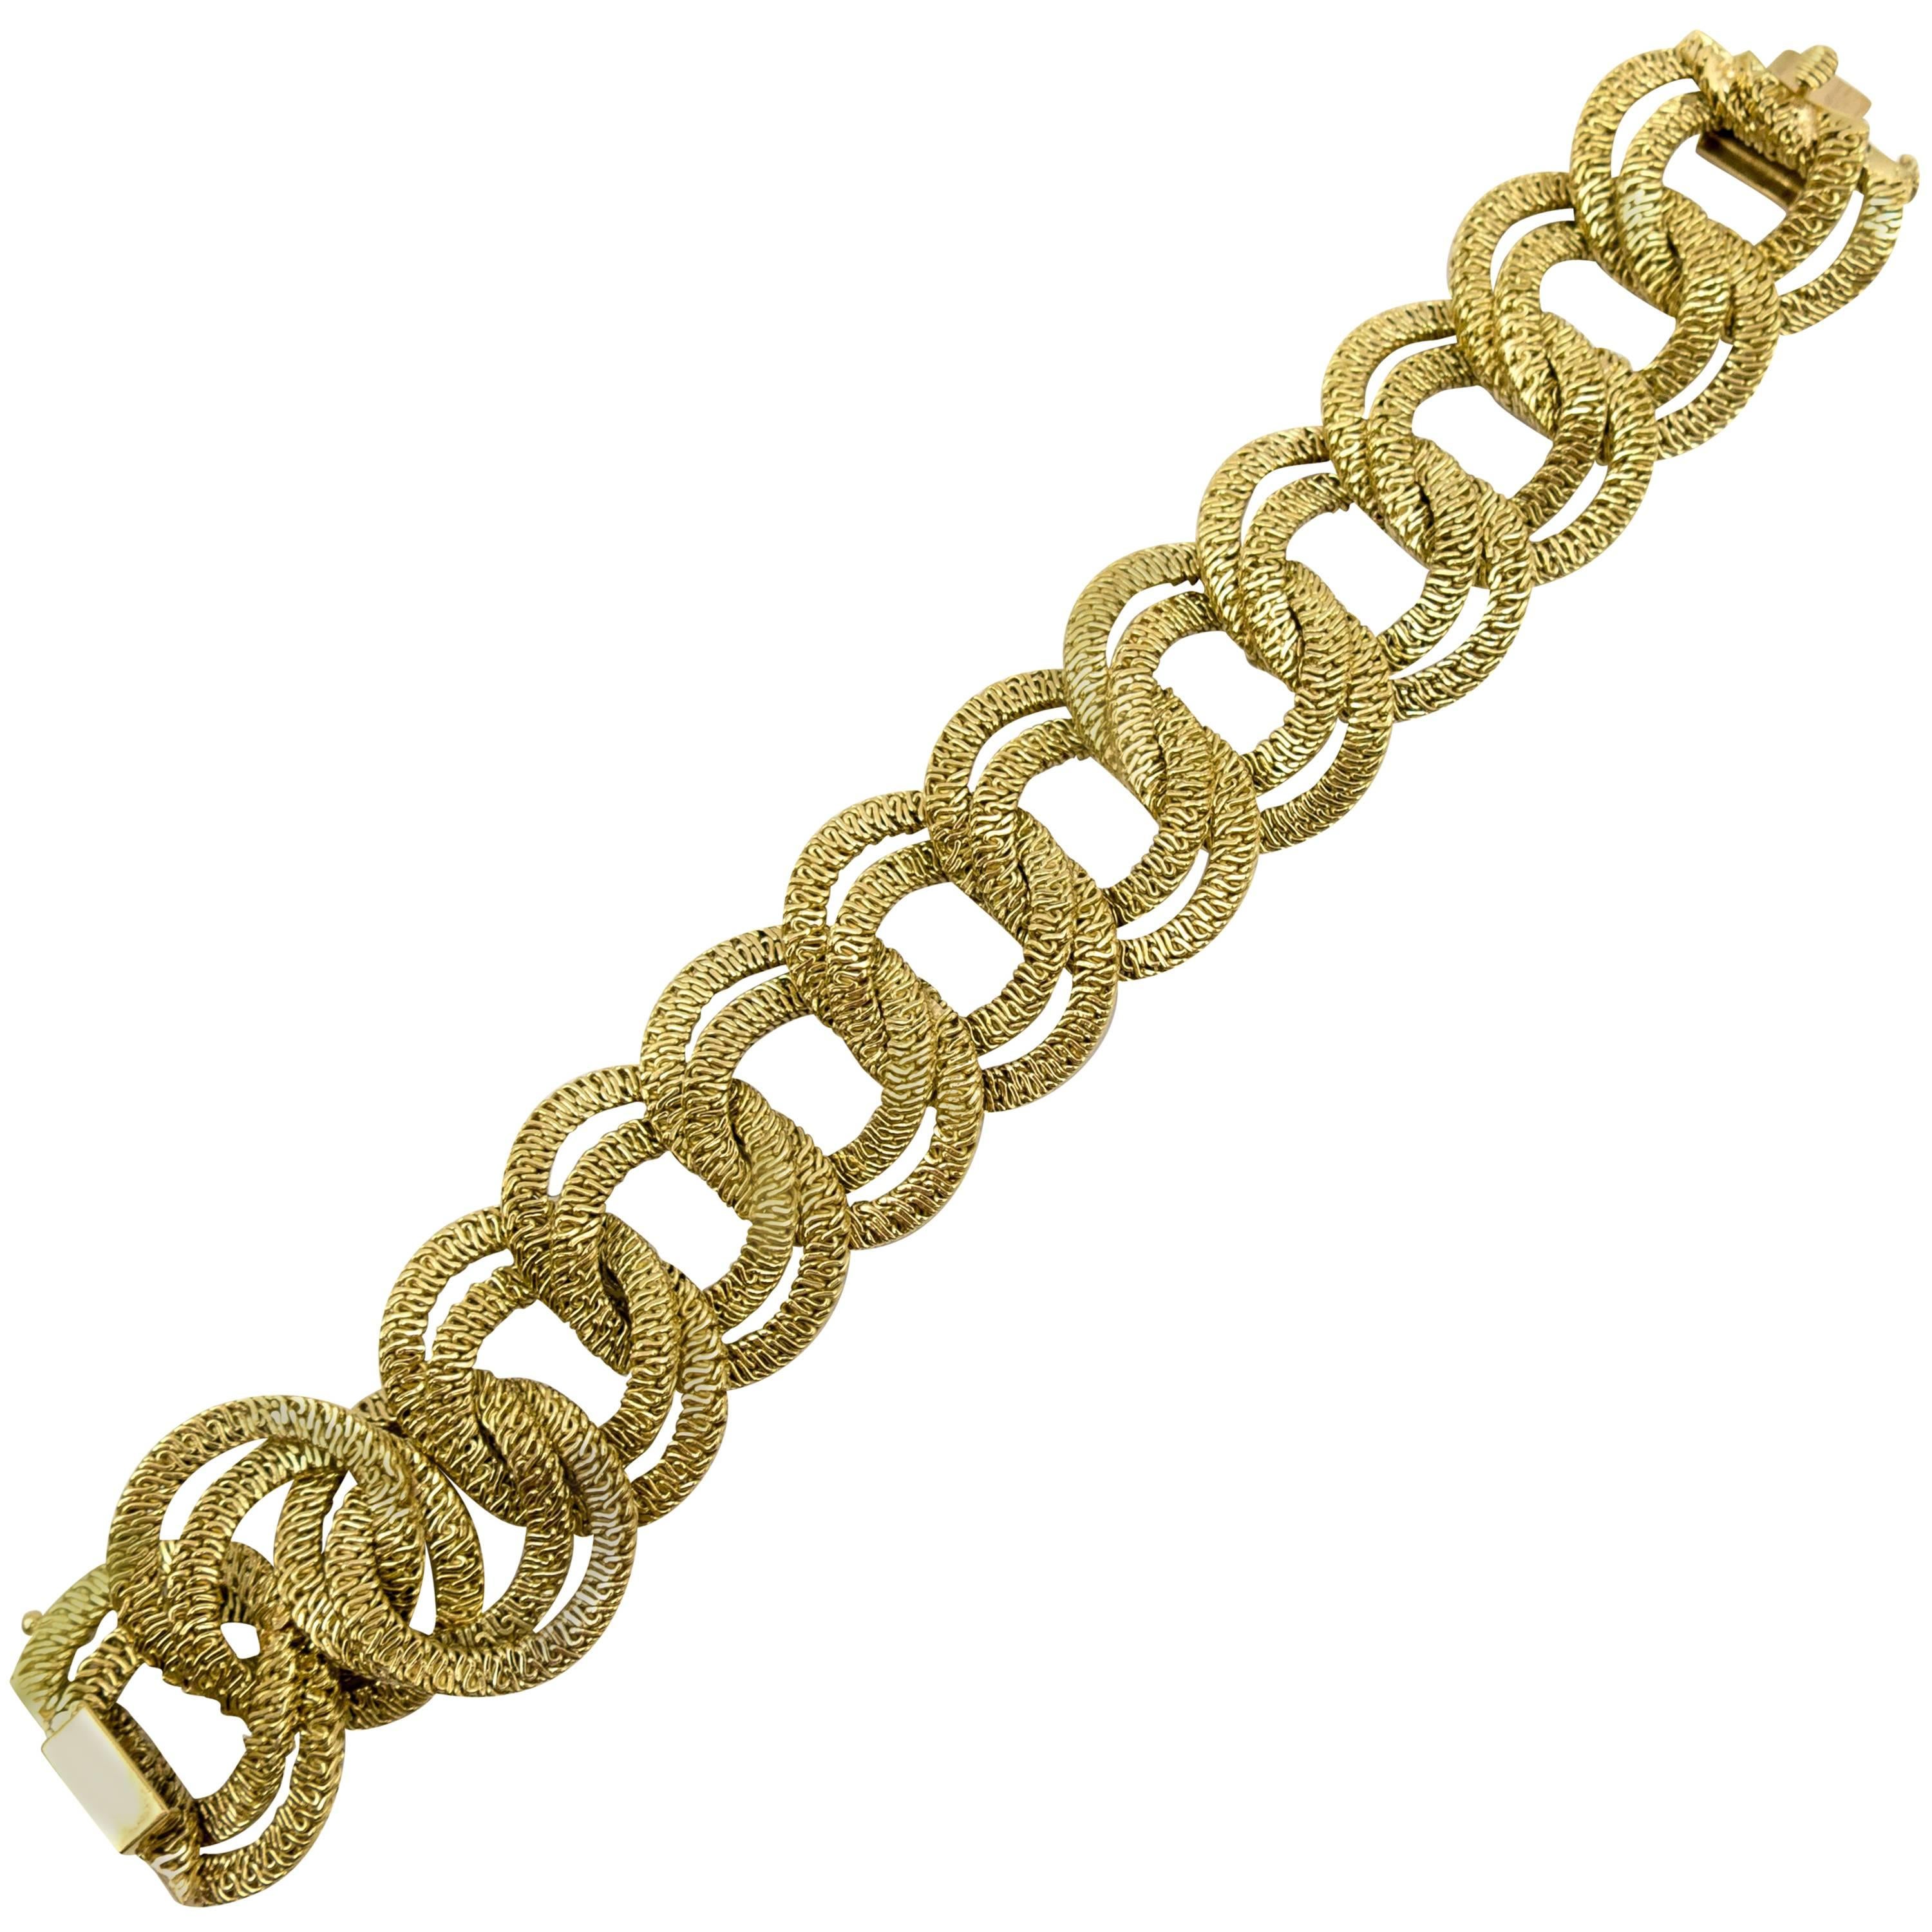  Italian Gold Braid Curb Link   Bracelet